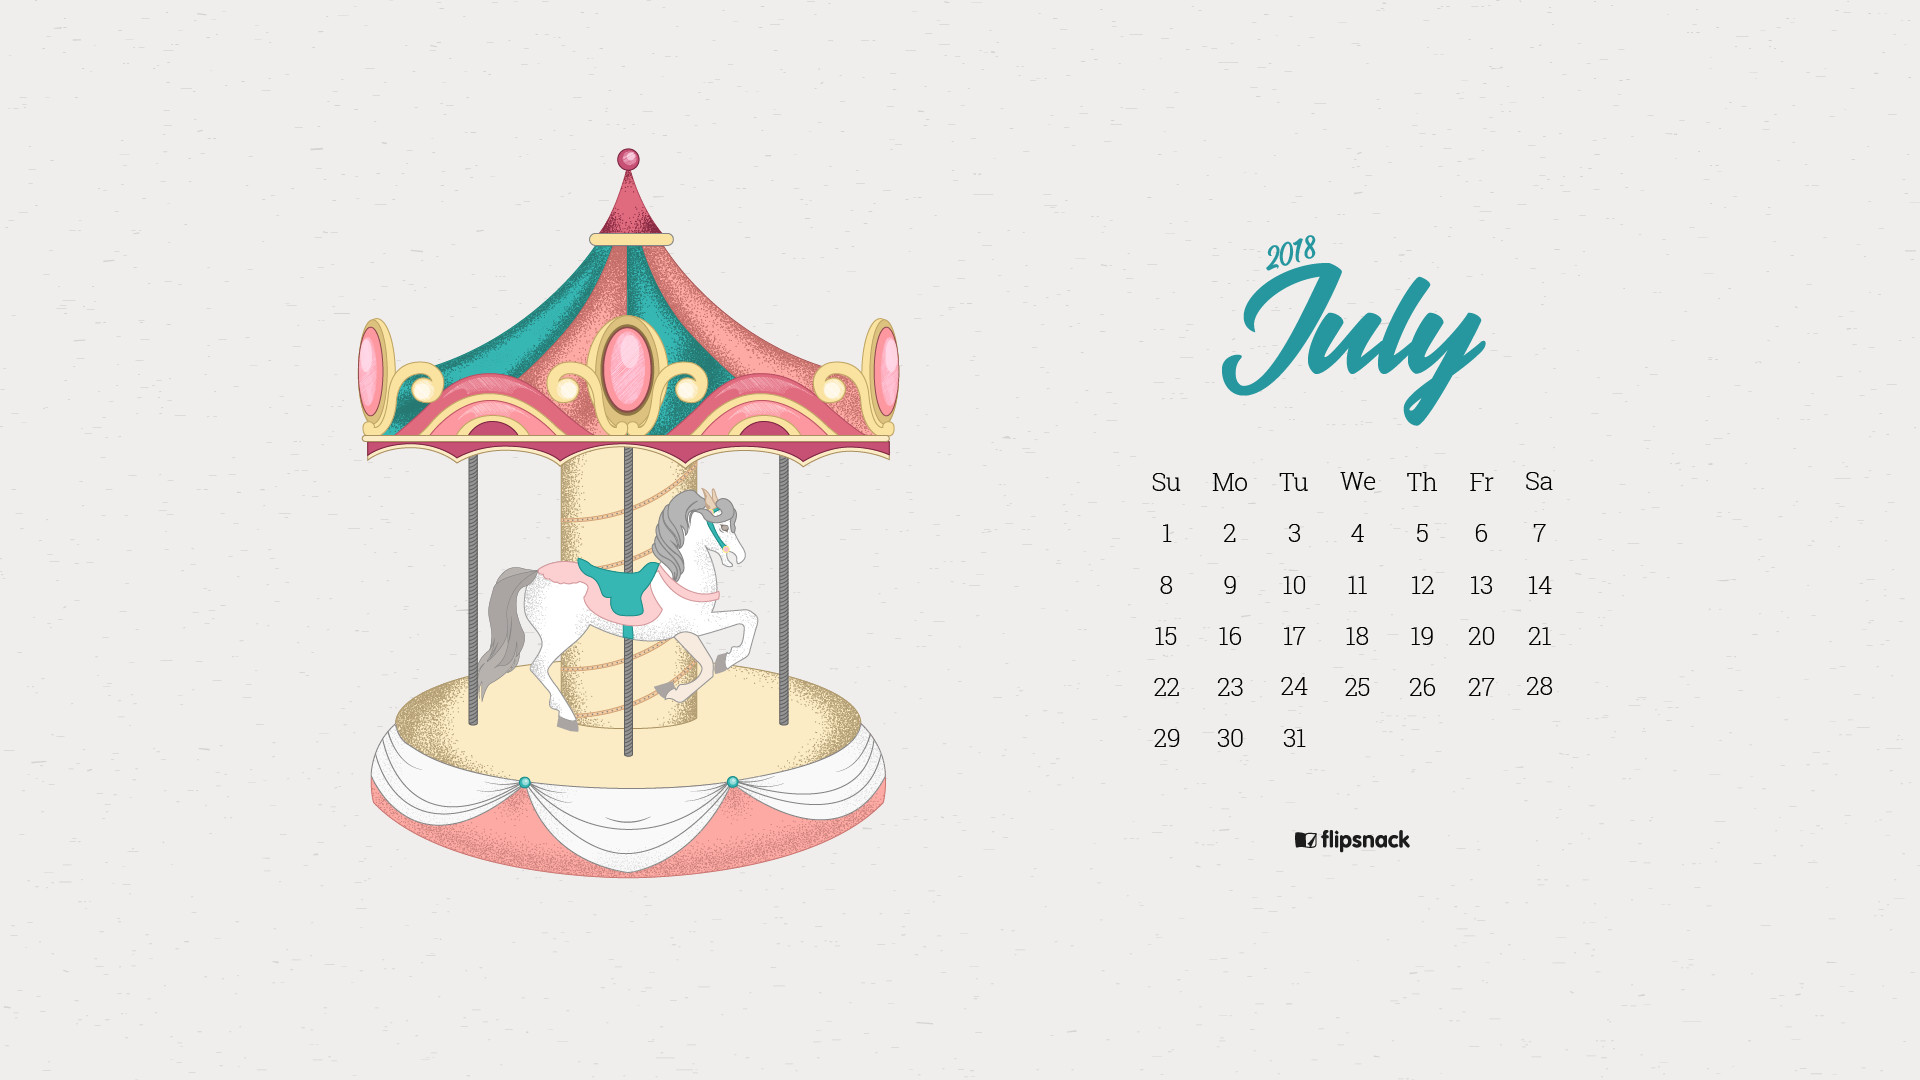 1920x1080 Free download: 1920Ã1080, 1366Ã768, 640Ã1136. july 2018 wallpaper calendar  carousel